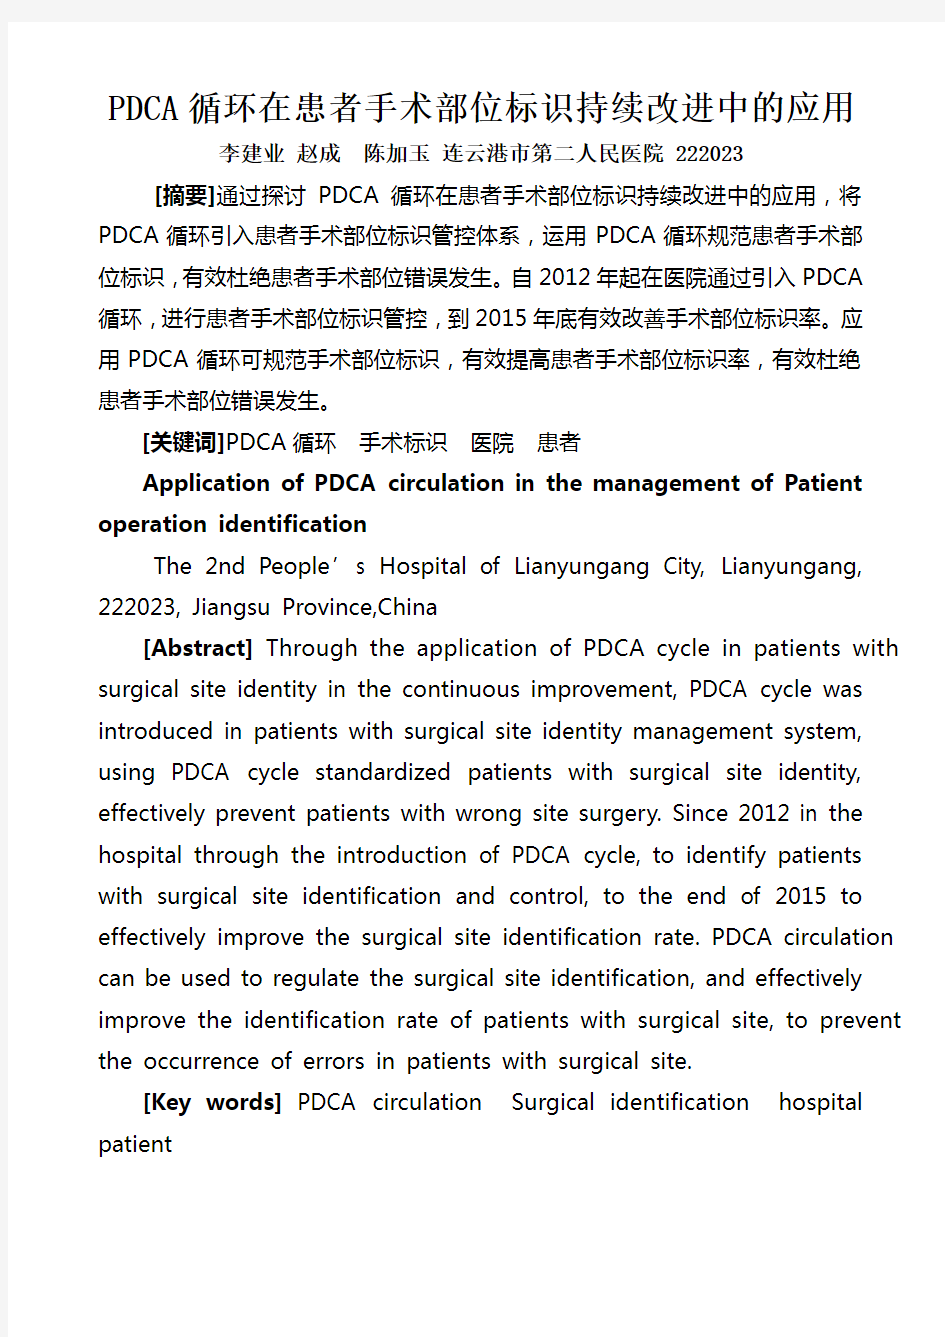 PDCA循环在患者手术部位标识持续改进中的应用